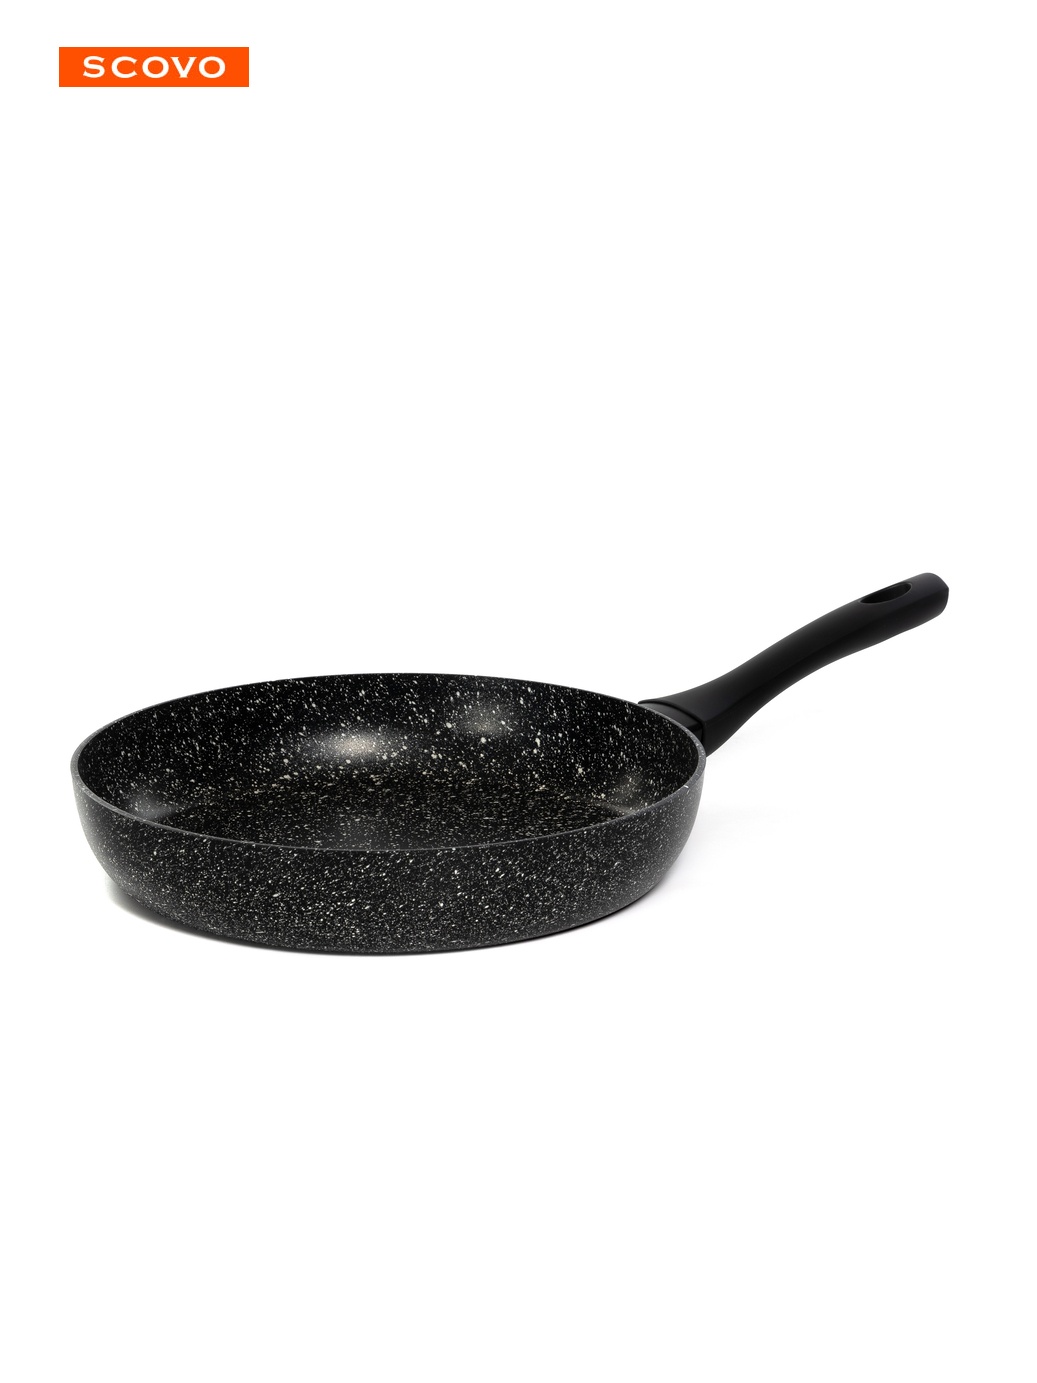 Сковорода Hi-Black, 28 см, с крышкой